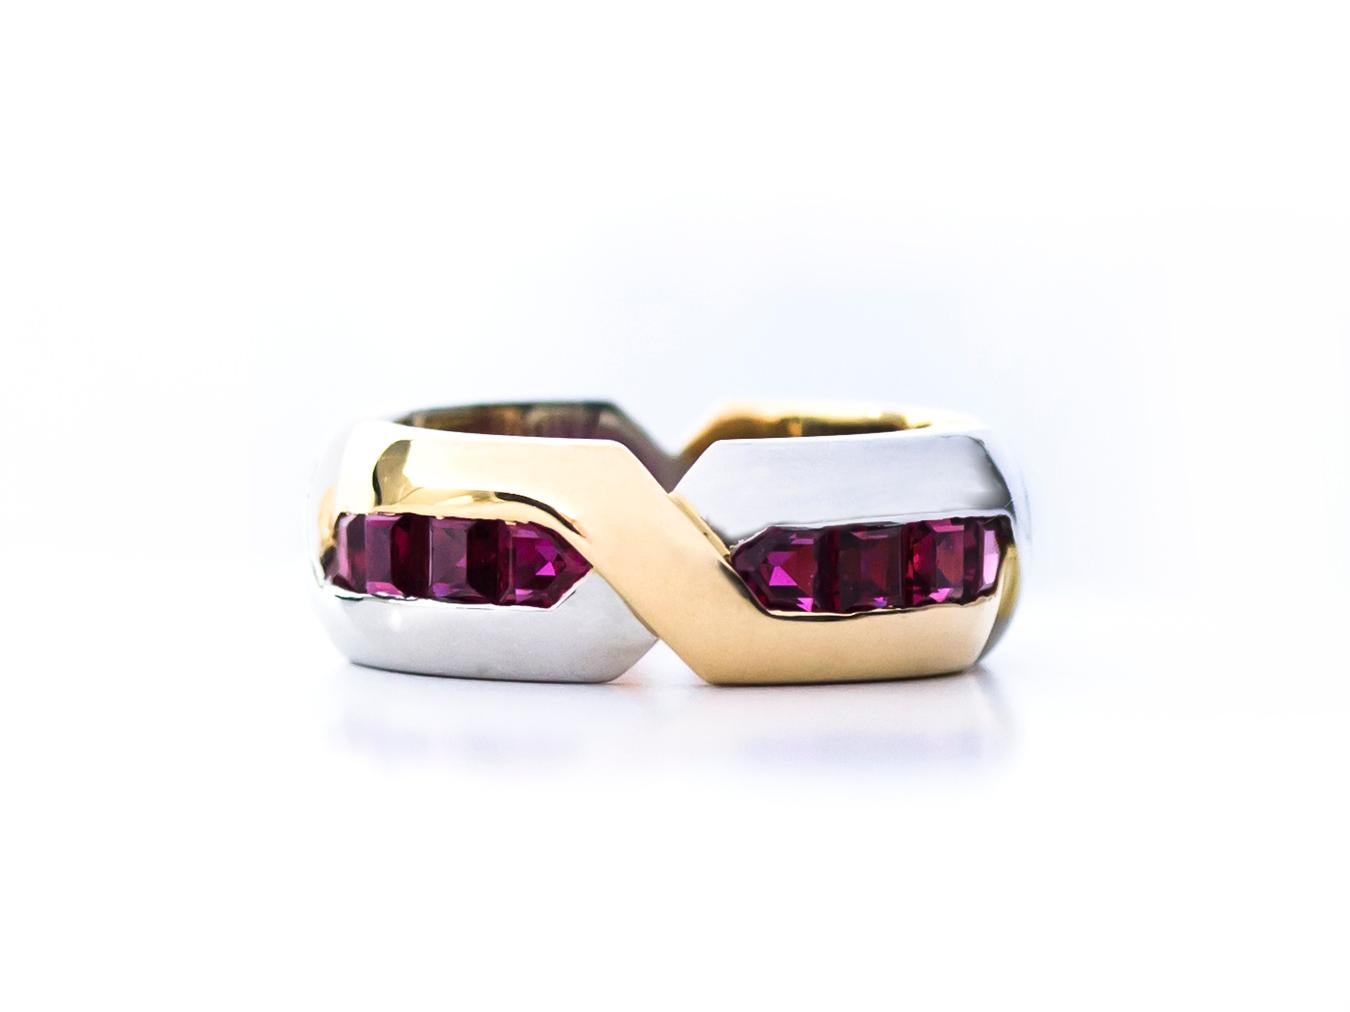 Oscar Heyman Ring aus 18kt Gelbgold und Platin mit 16 quadratischen Rubinen mit einem Gewicht von 2,96cts. Sie ist 7 mm breit und mit der Herstellermarke 18K PLAT und der Seriennummer M2842 gestempelt. 

Größe 6.

Weitere Größen sind verfügbar. Auch